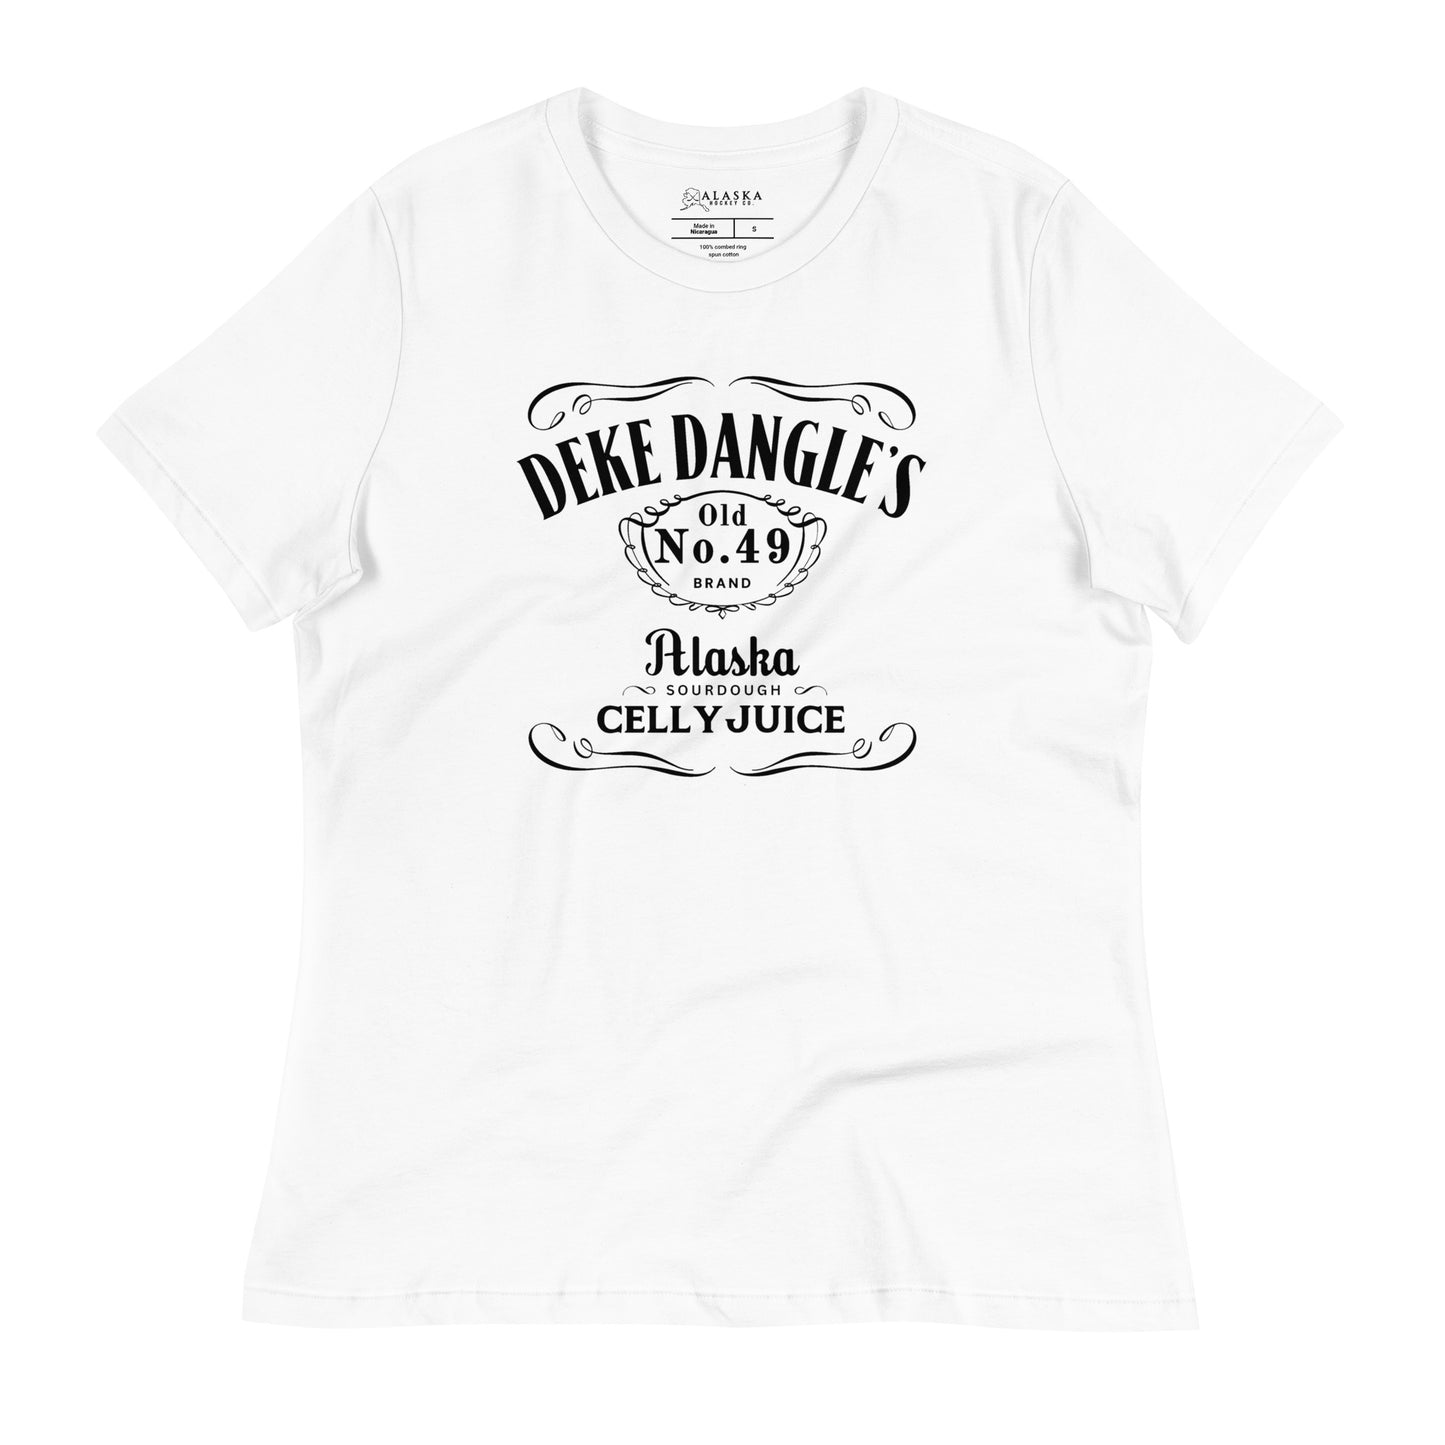 Deke Dangle's Women's Relaxed T-Shirt